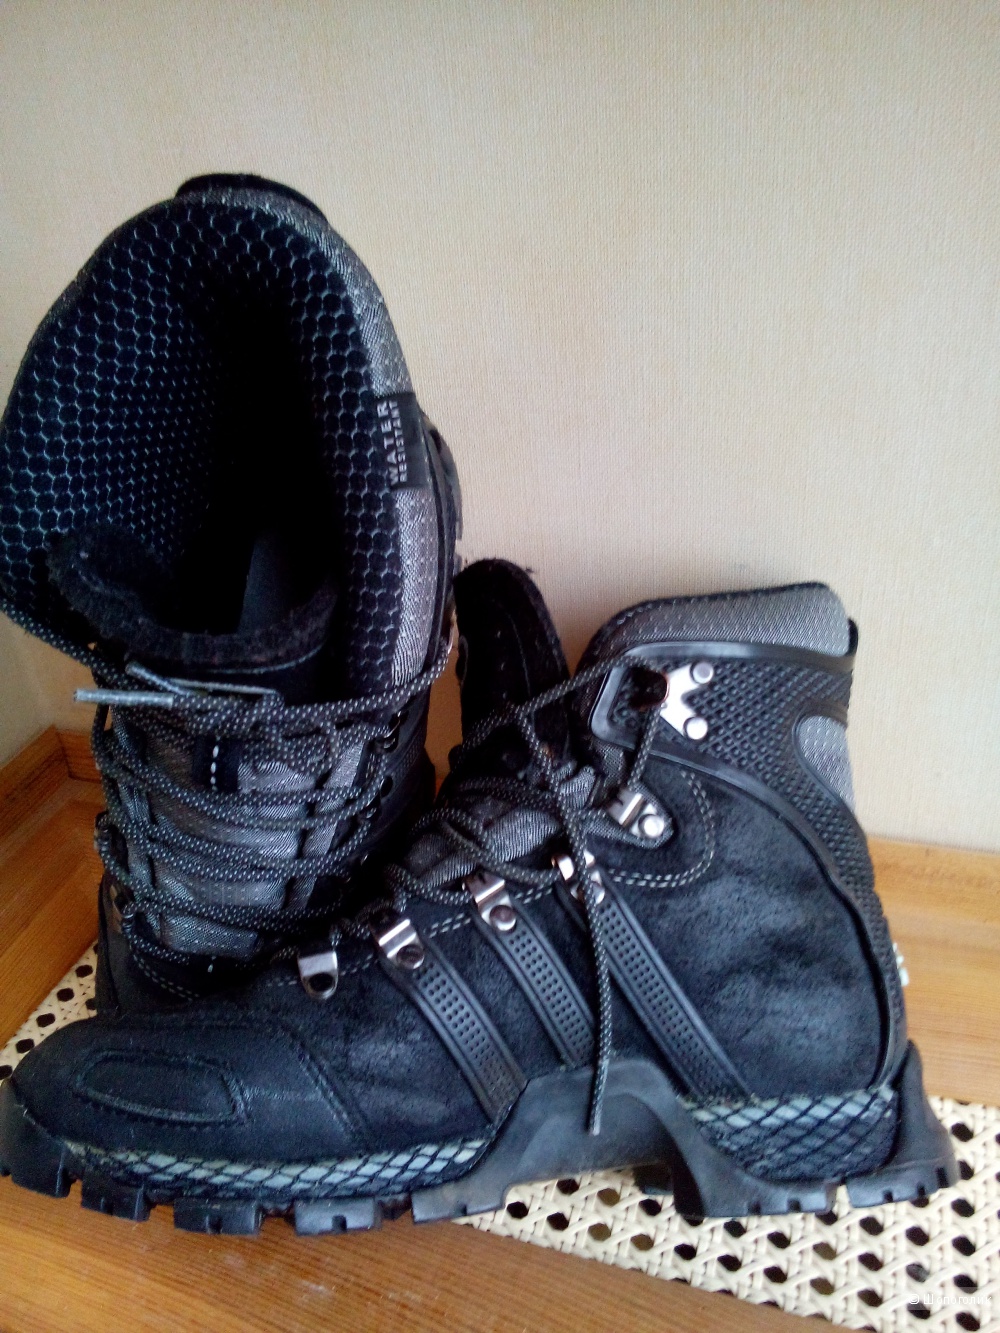 Ботинки-кроссовки ADIDAS Waterproof Climawarm зима-осень в размере 38 FR, 5 1/2 US,5UK